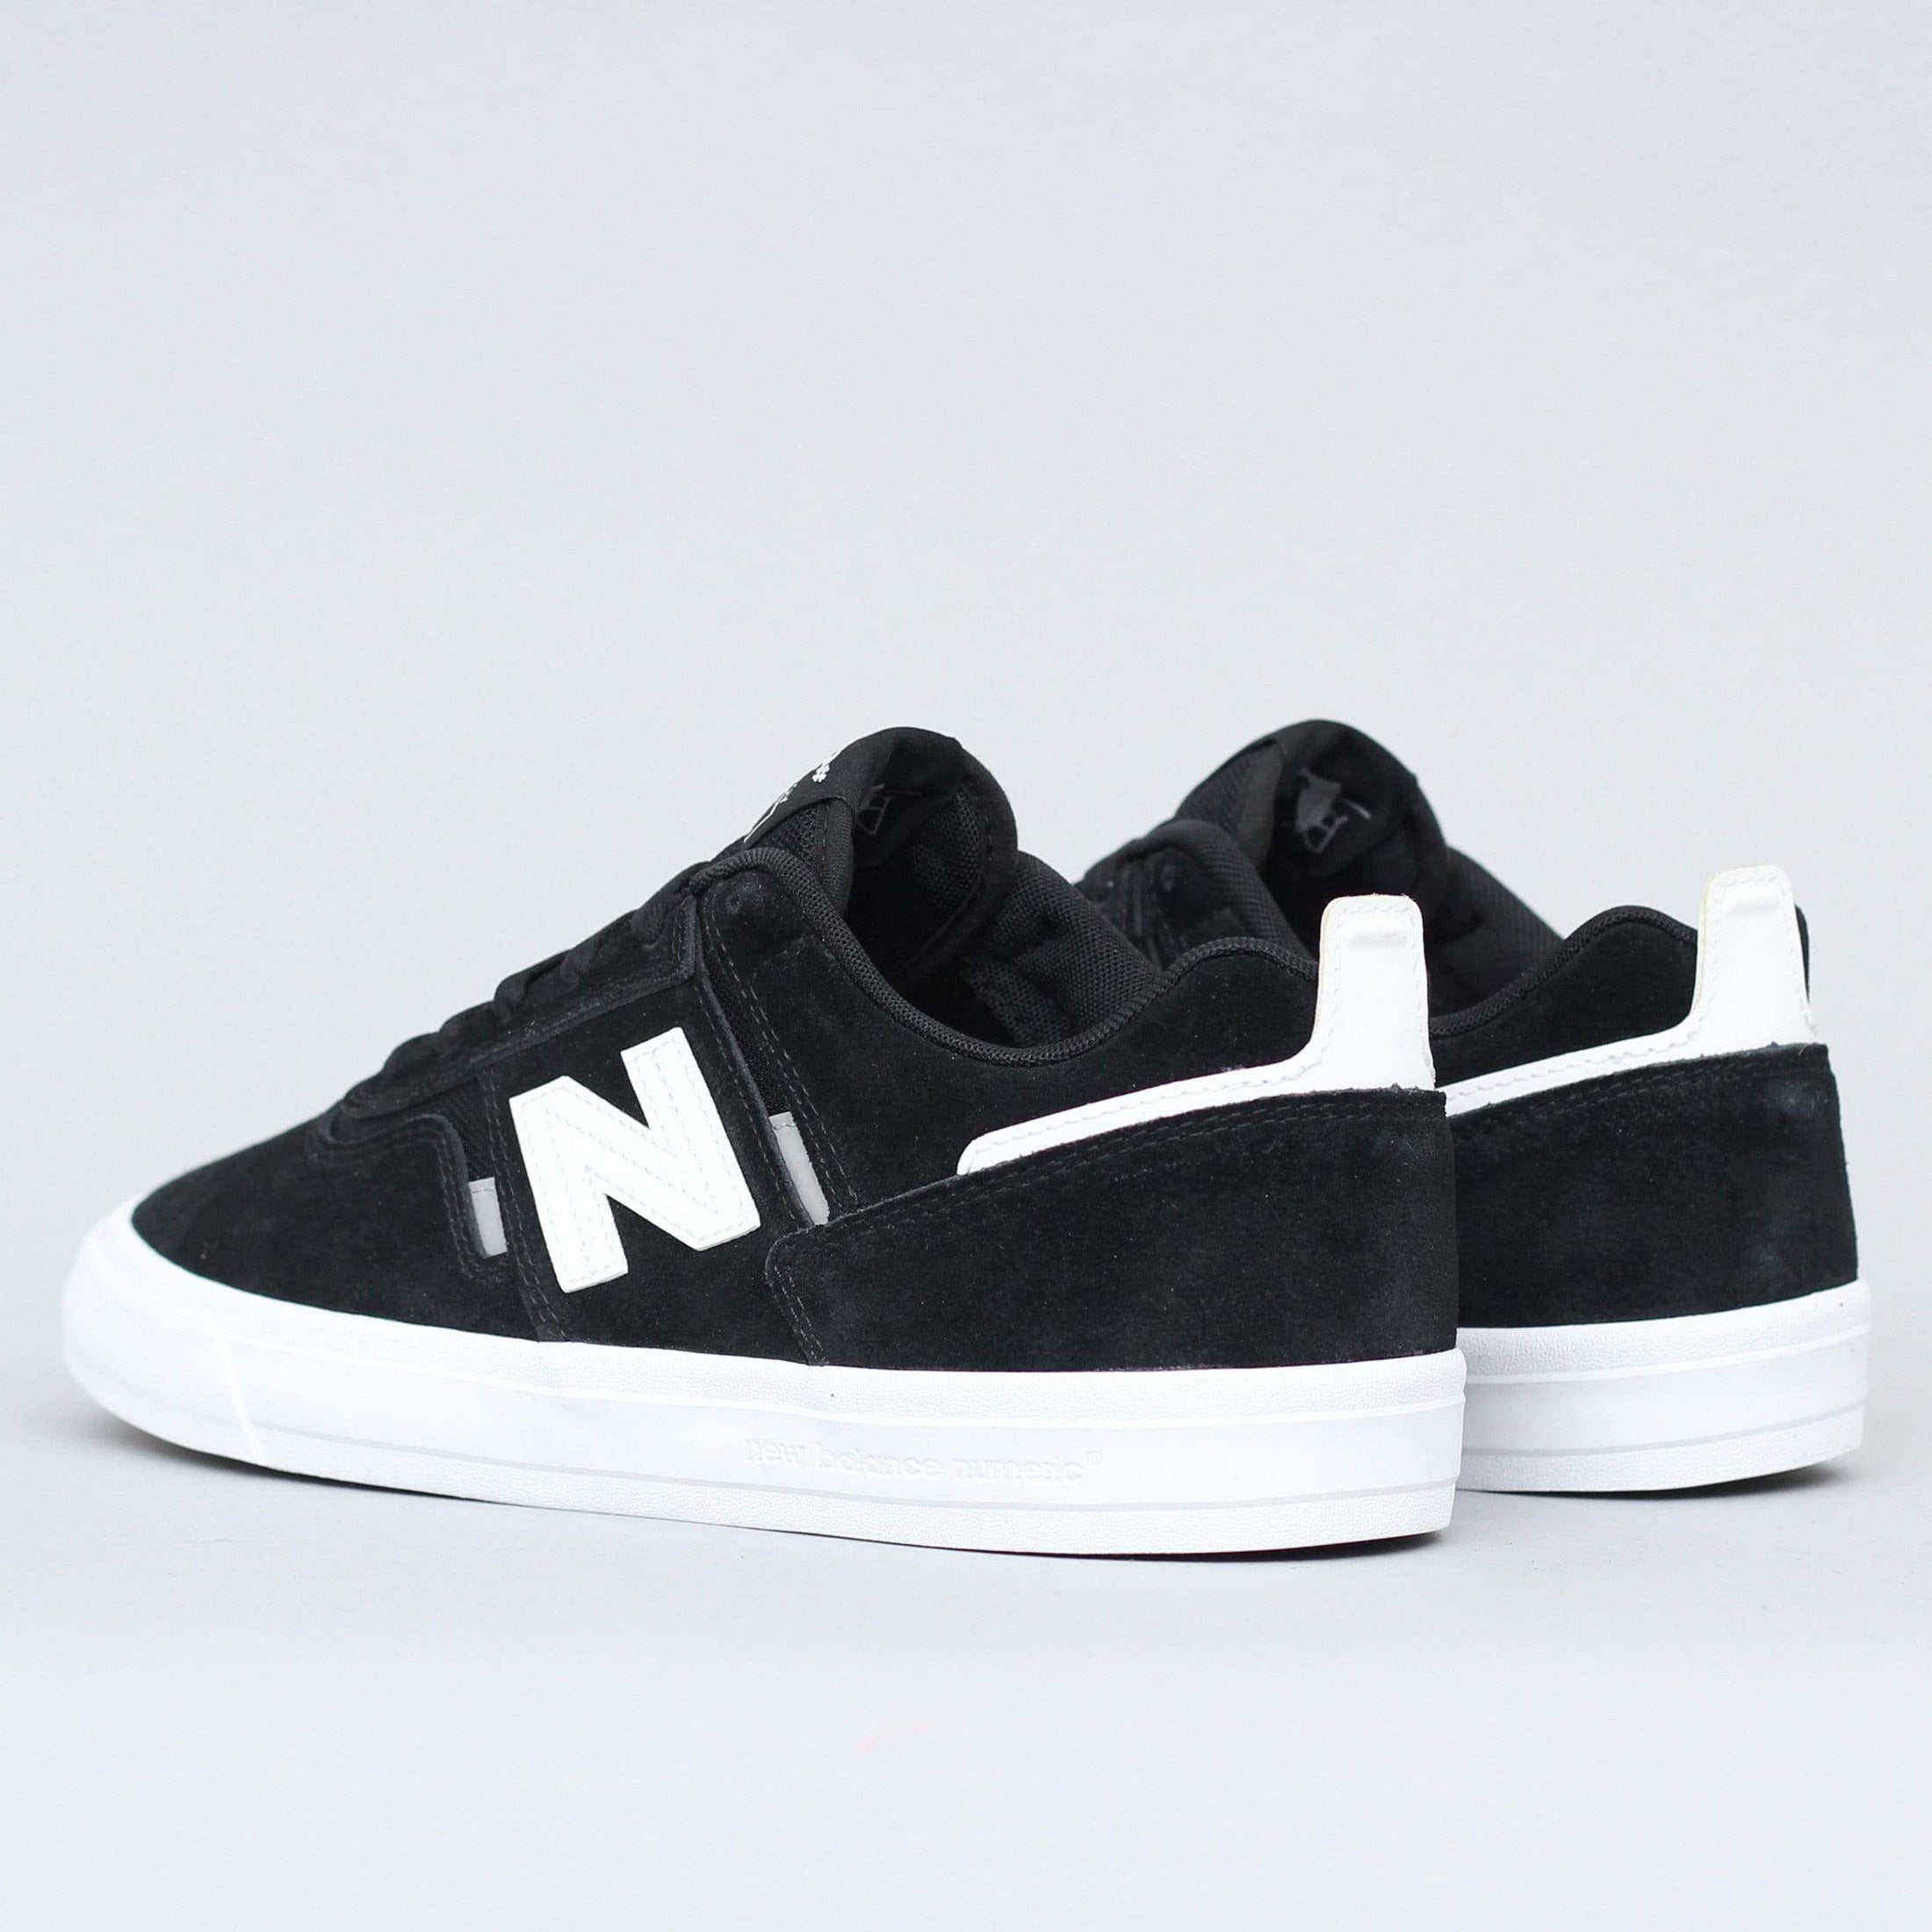 New Balance Numeric 306 Shoes Black / White